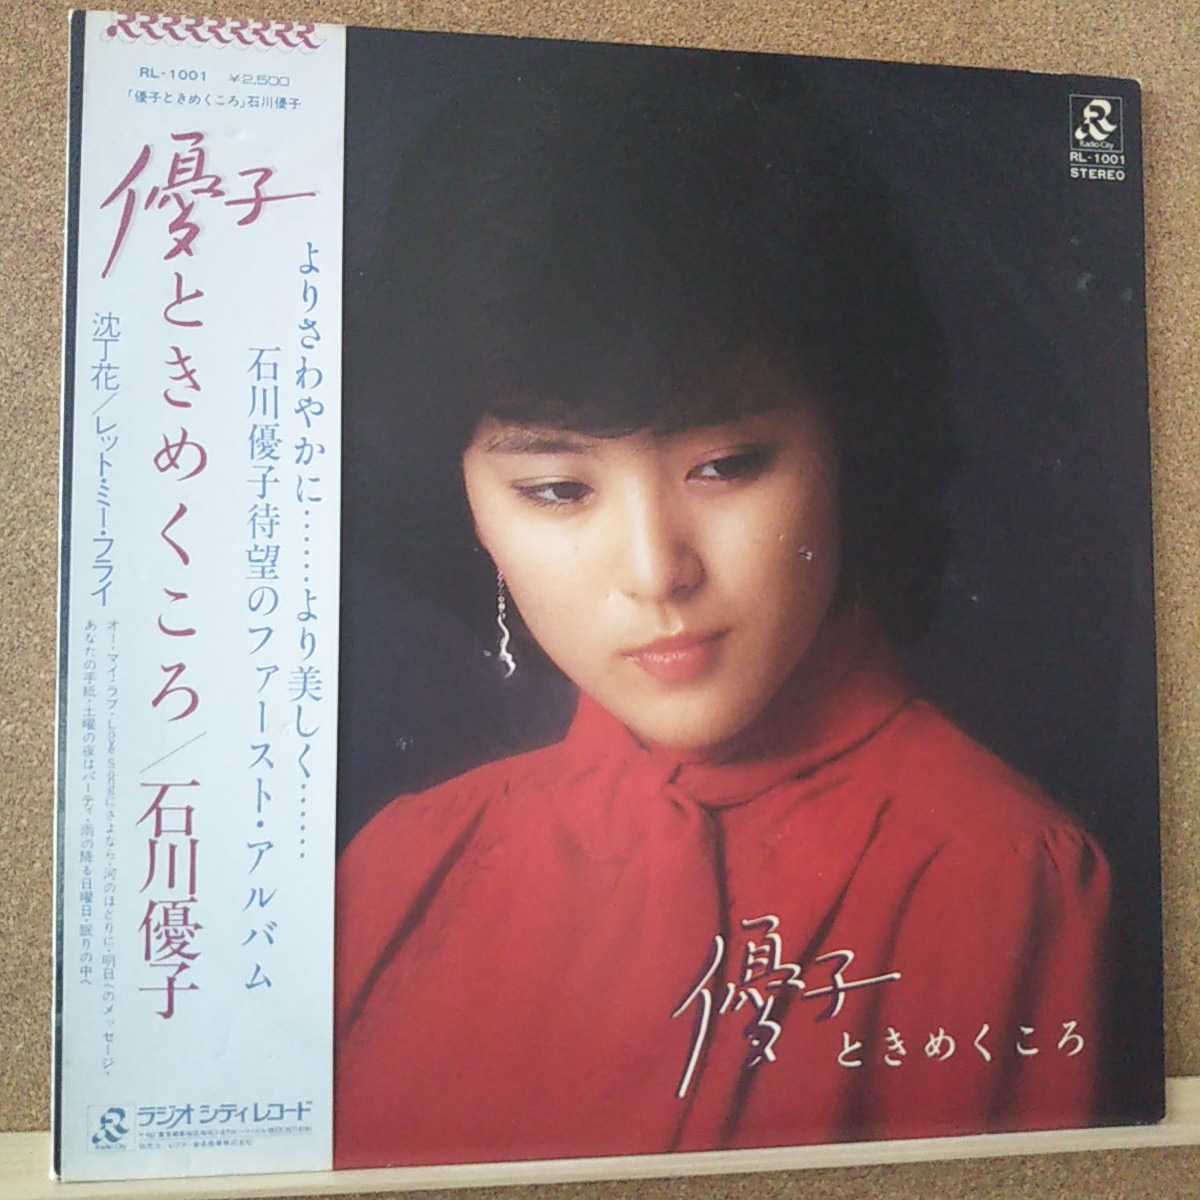 LP (специальная цена, с Obi) Юко Ишикава/Юко Юко